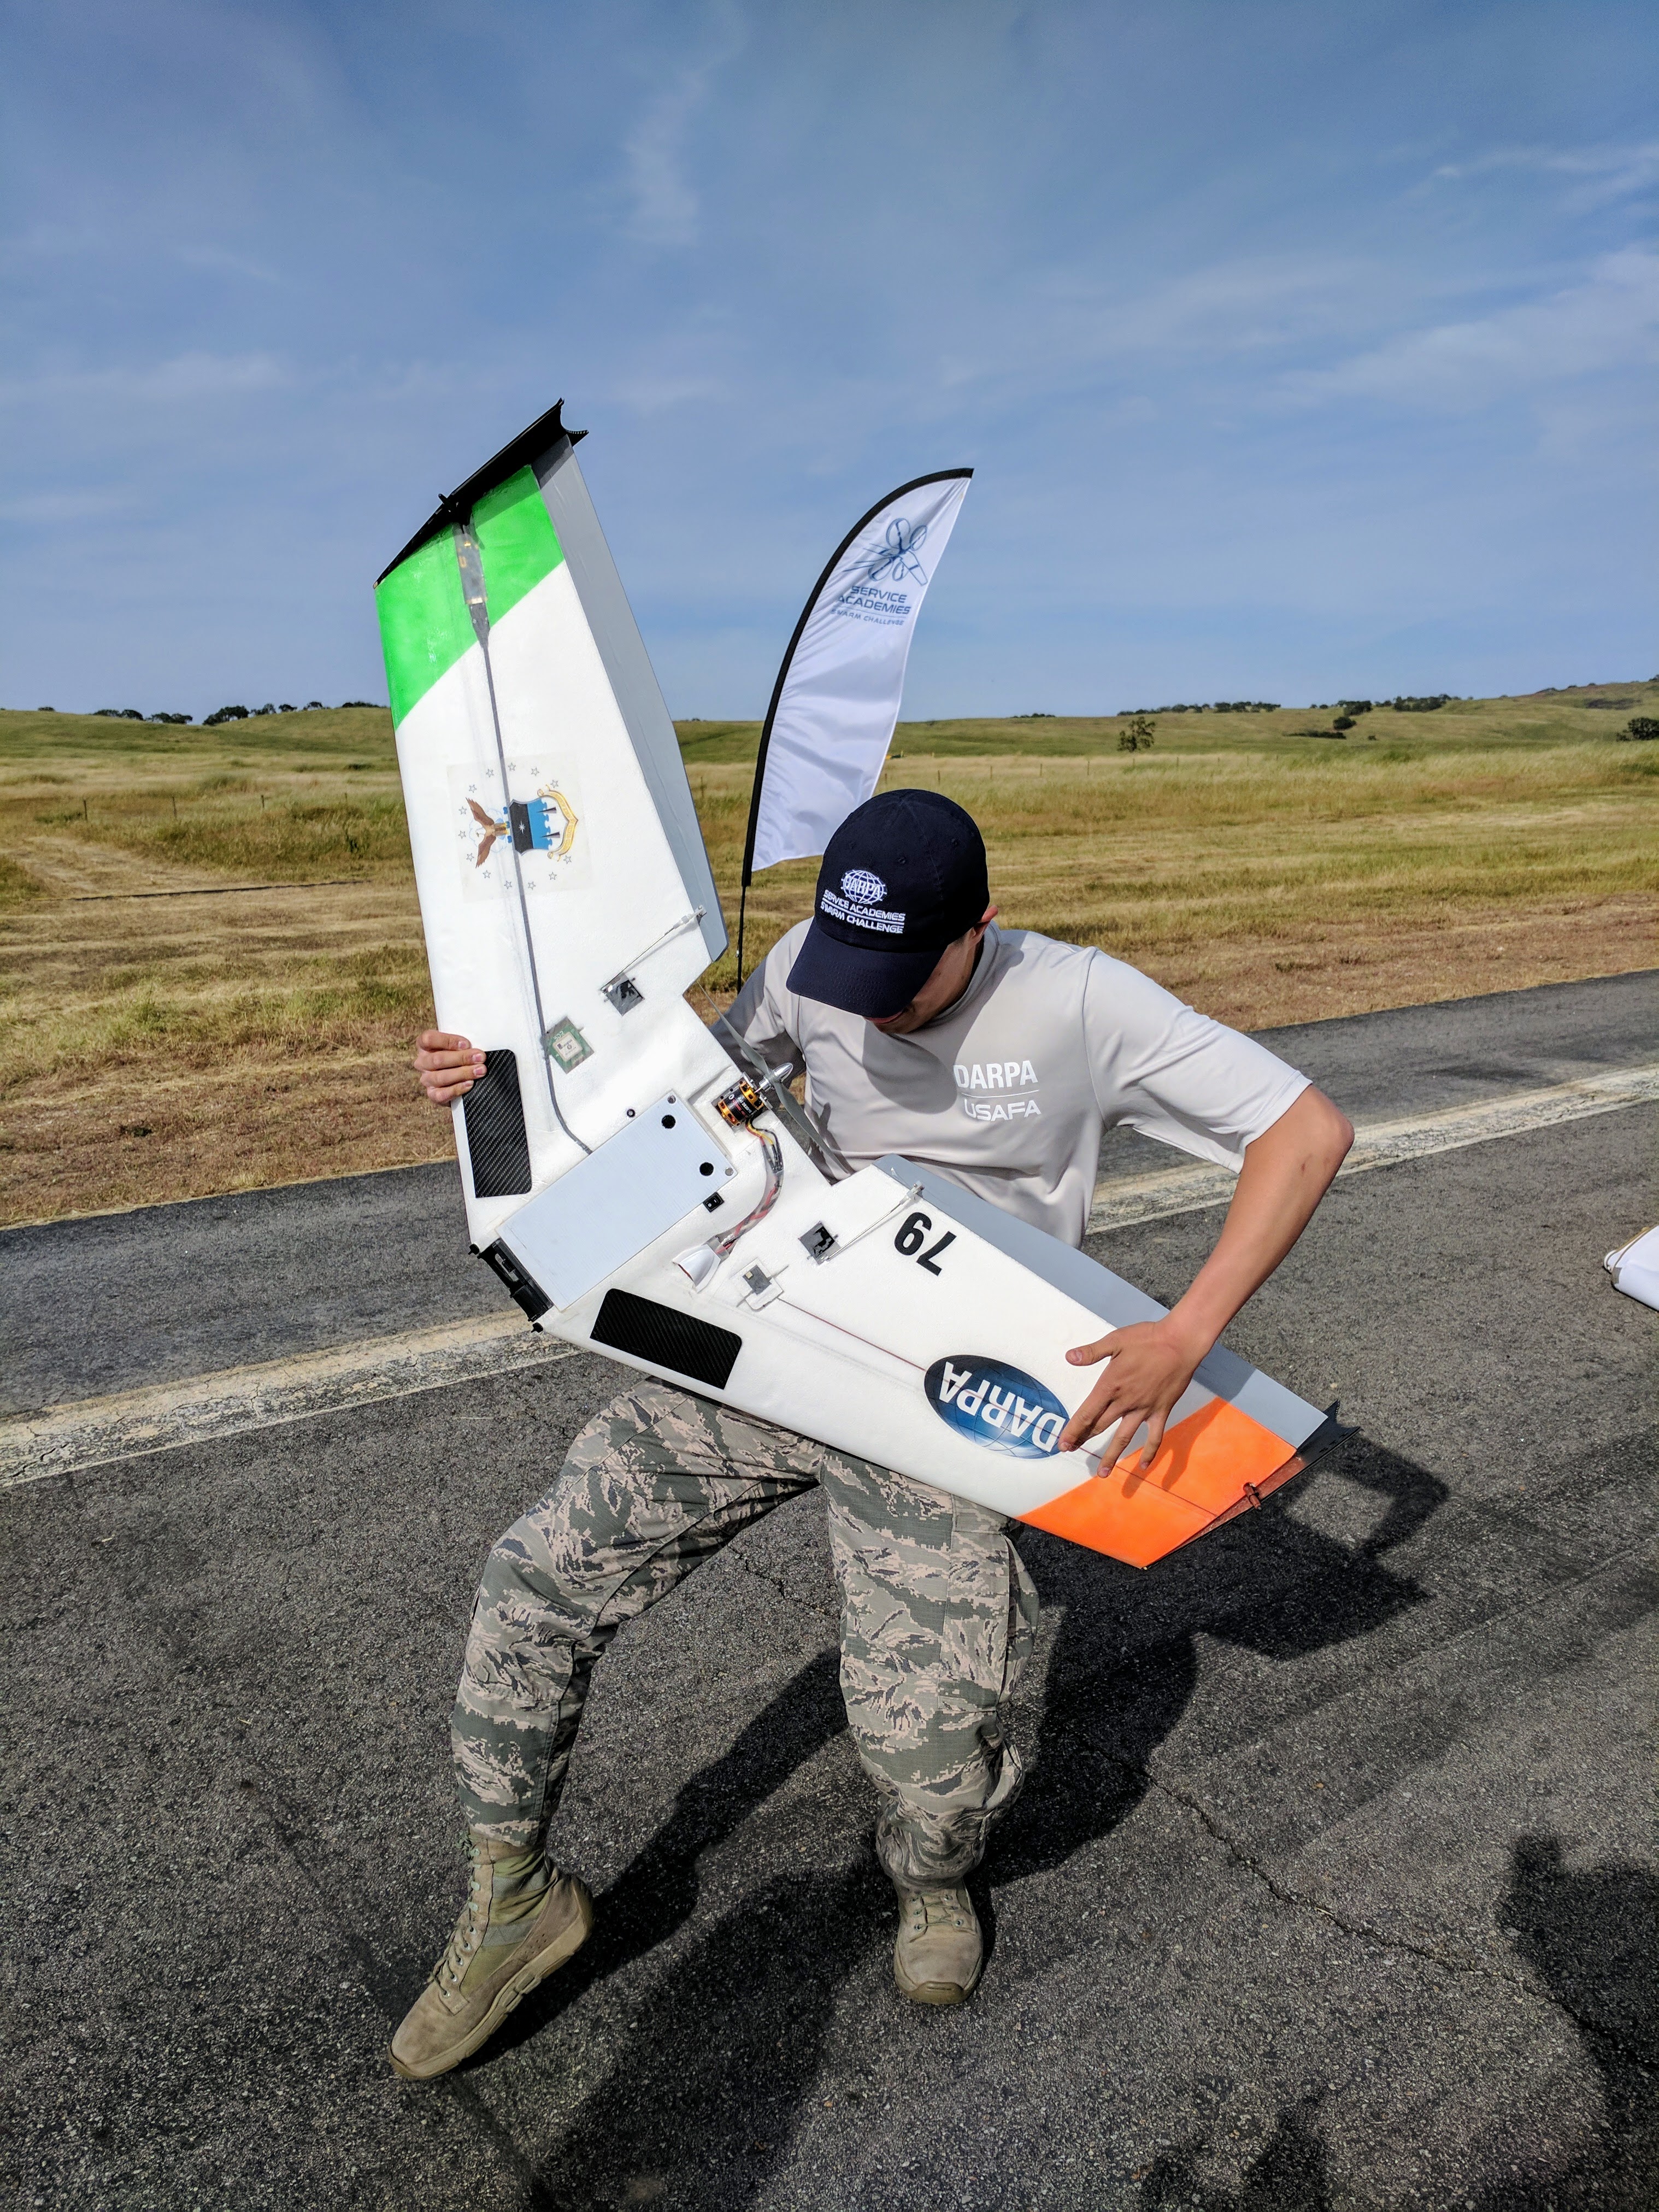 DARPA Swarm Drone Challenge